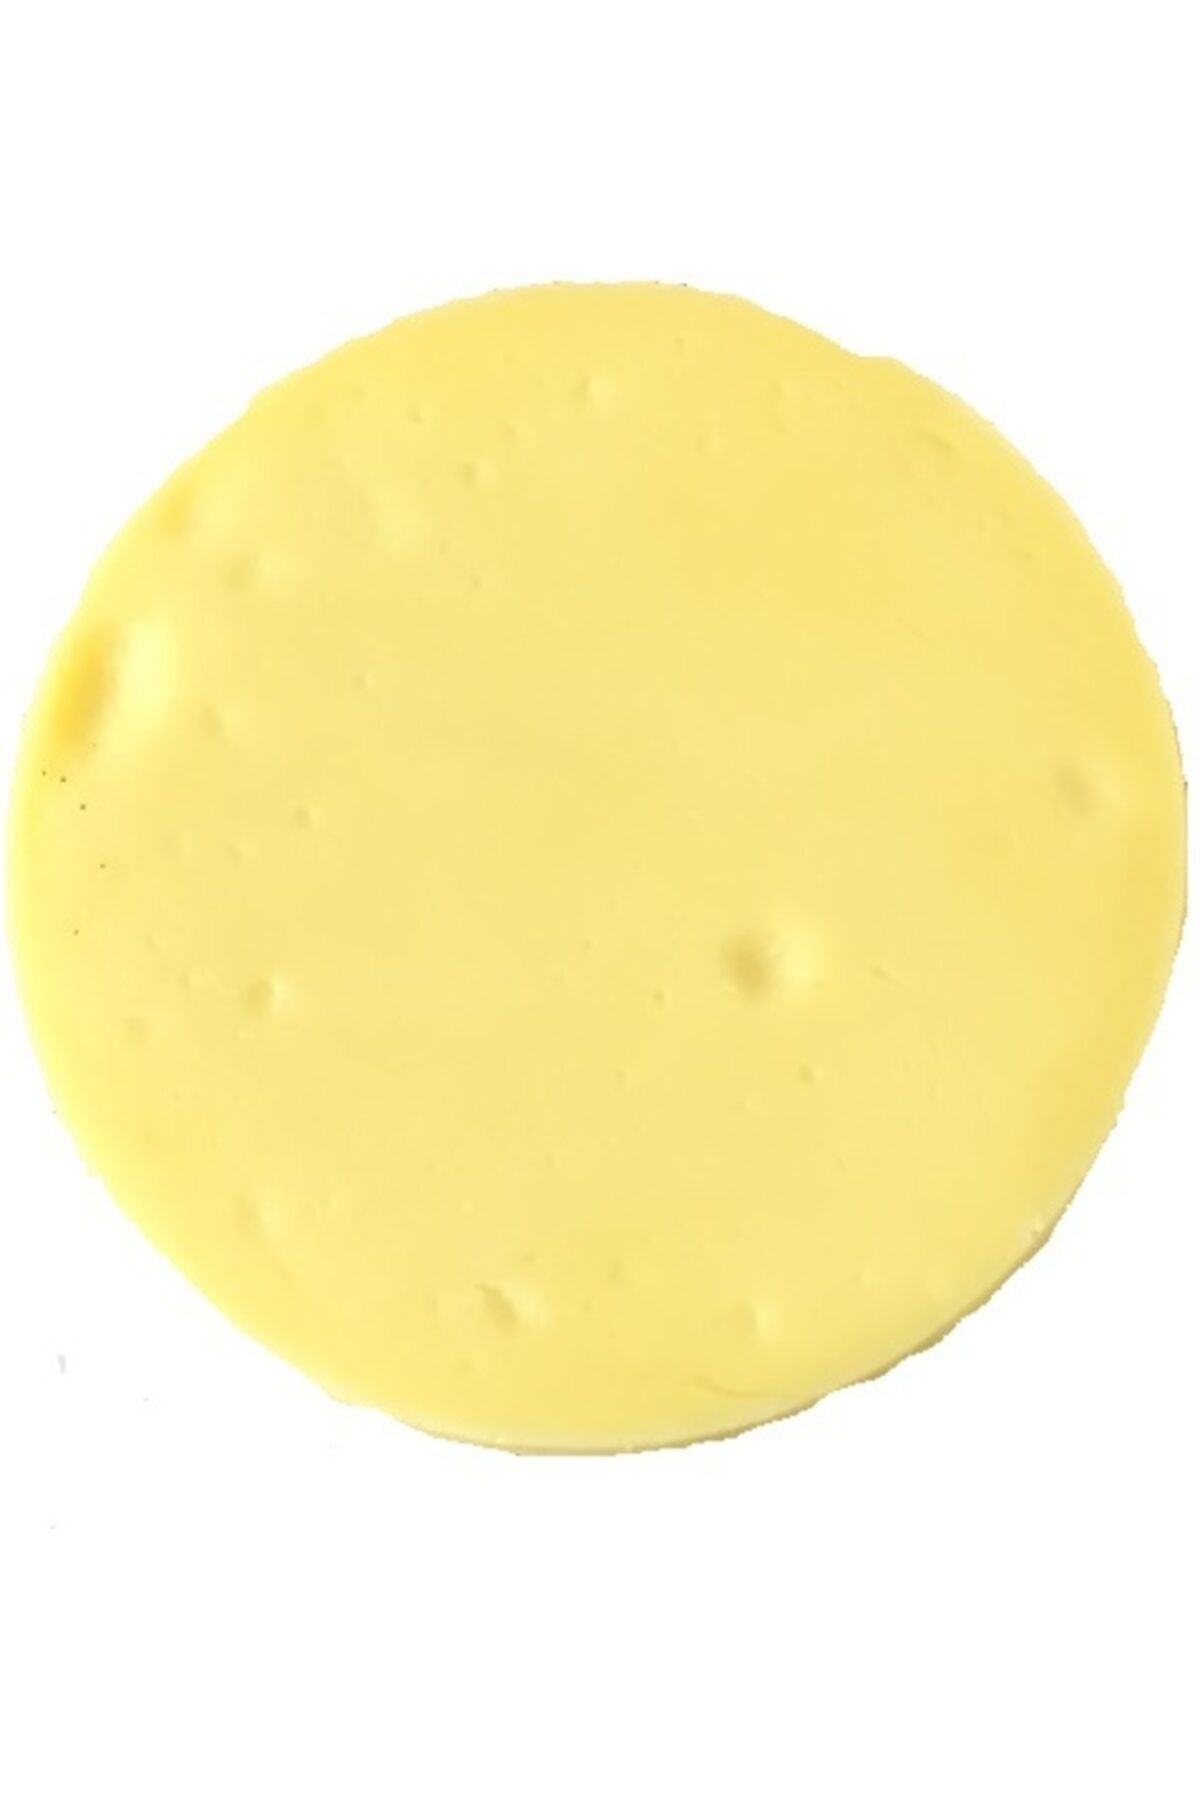 NiyaziBey Çiftliği Kolot Peynir Doğal Çiftlik Sütünden 500 gr